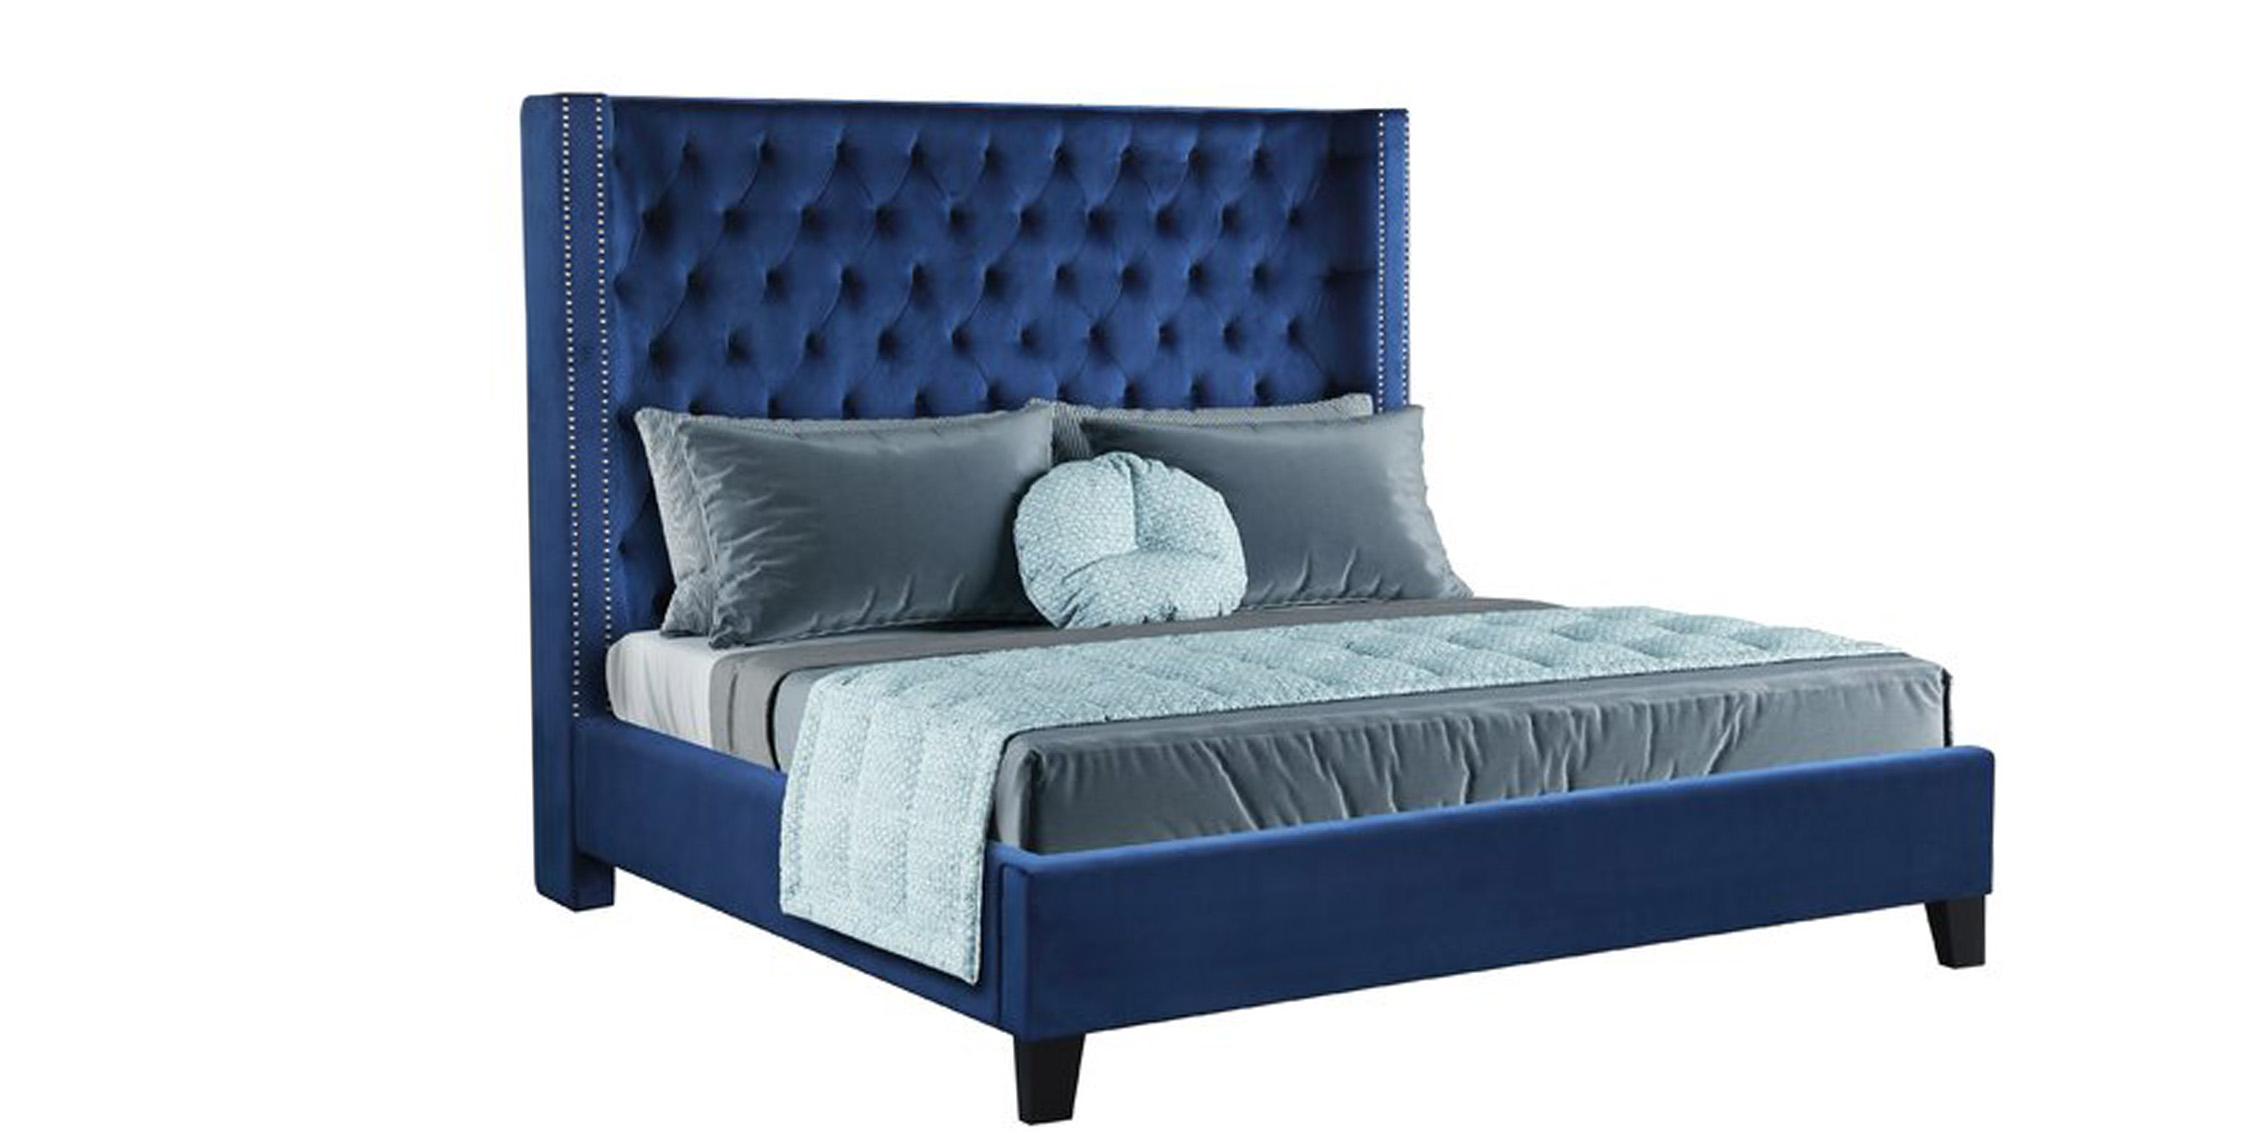 

    
Galaxy Home Furniture ALLEN Panel Bedroom Set Blue GHF-808857599964-Set-5-VAN
